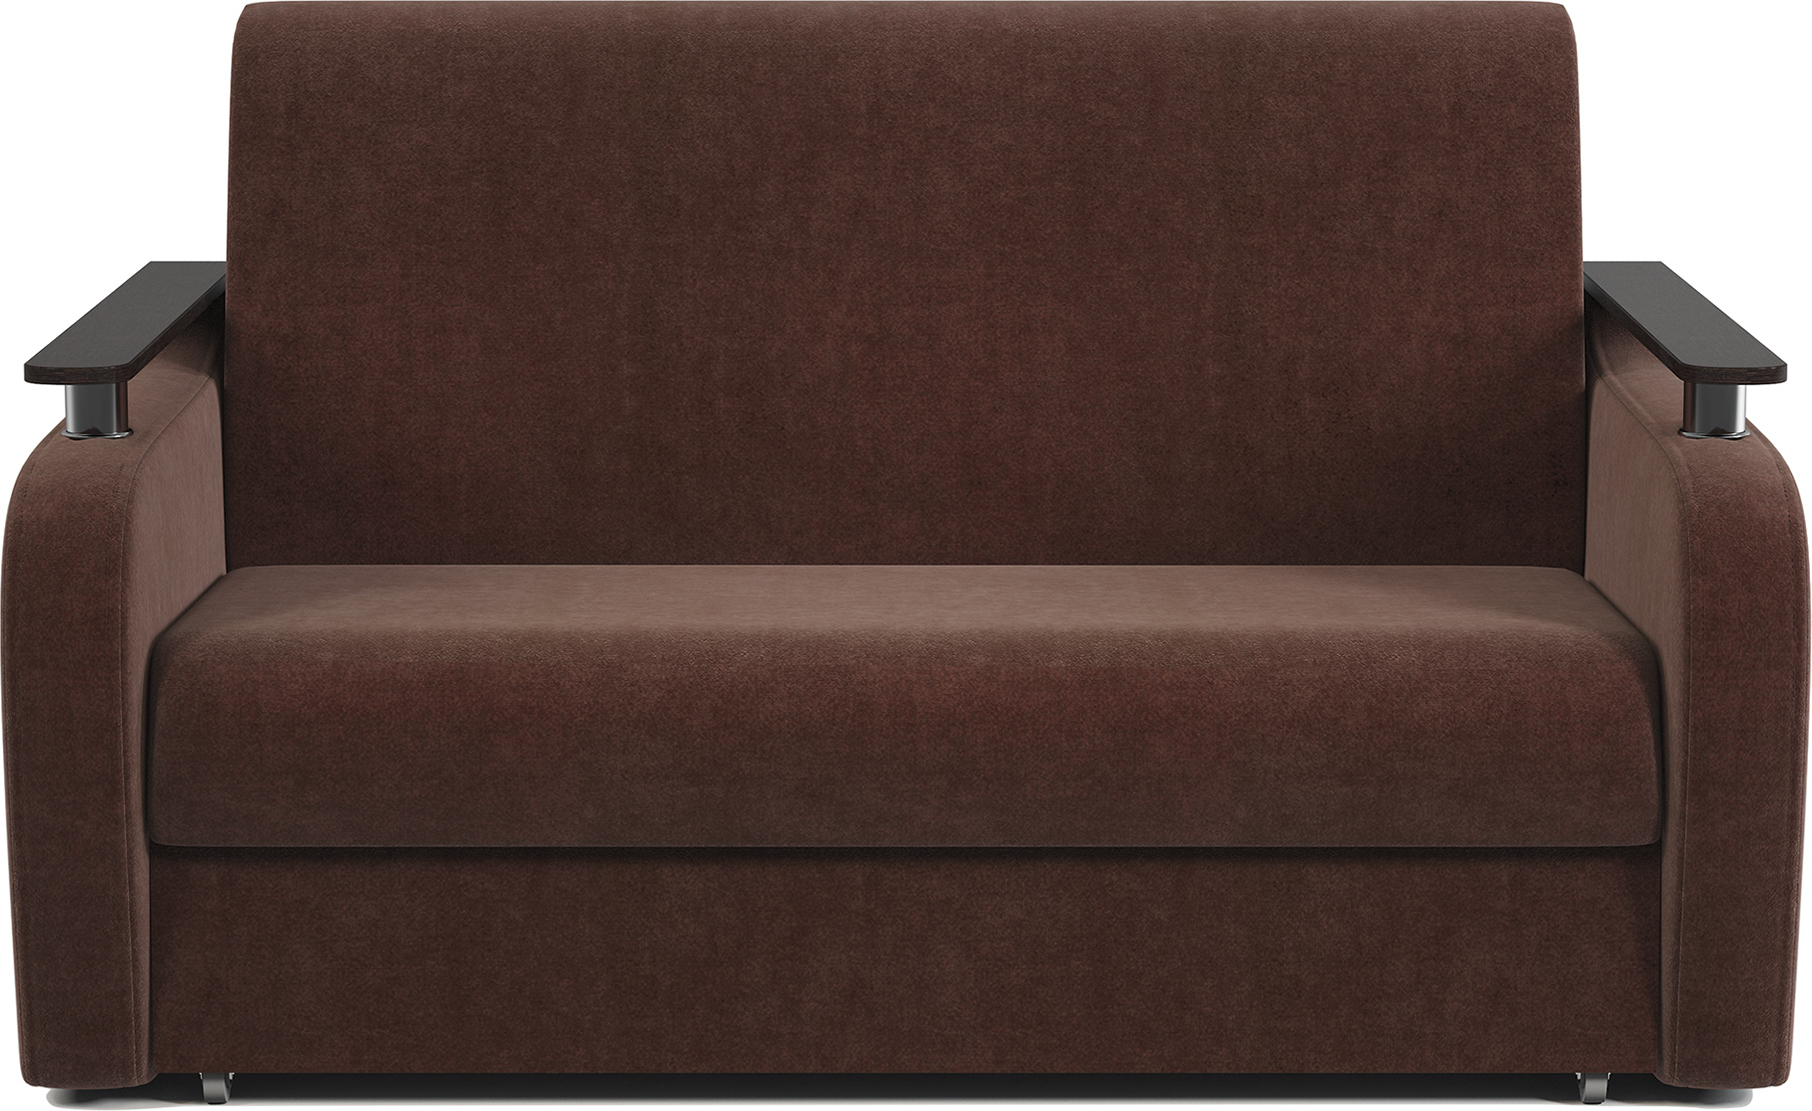 Диван 135 см ширина, раскладной диван-кровать 135 длина: купить в Москвенедорого, аккордеон со спальным местом